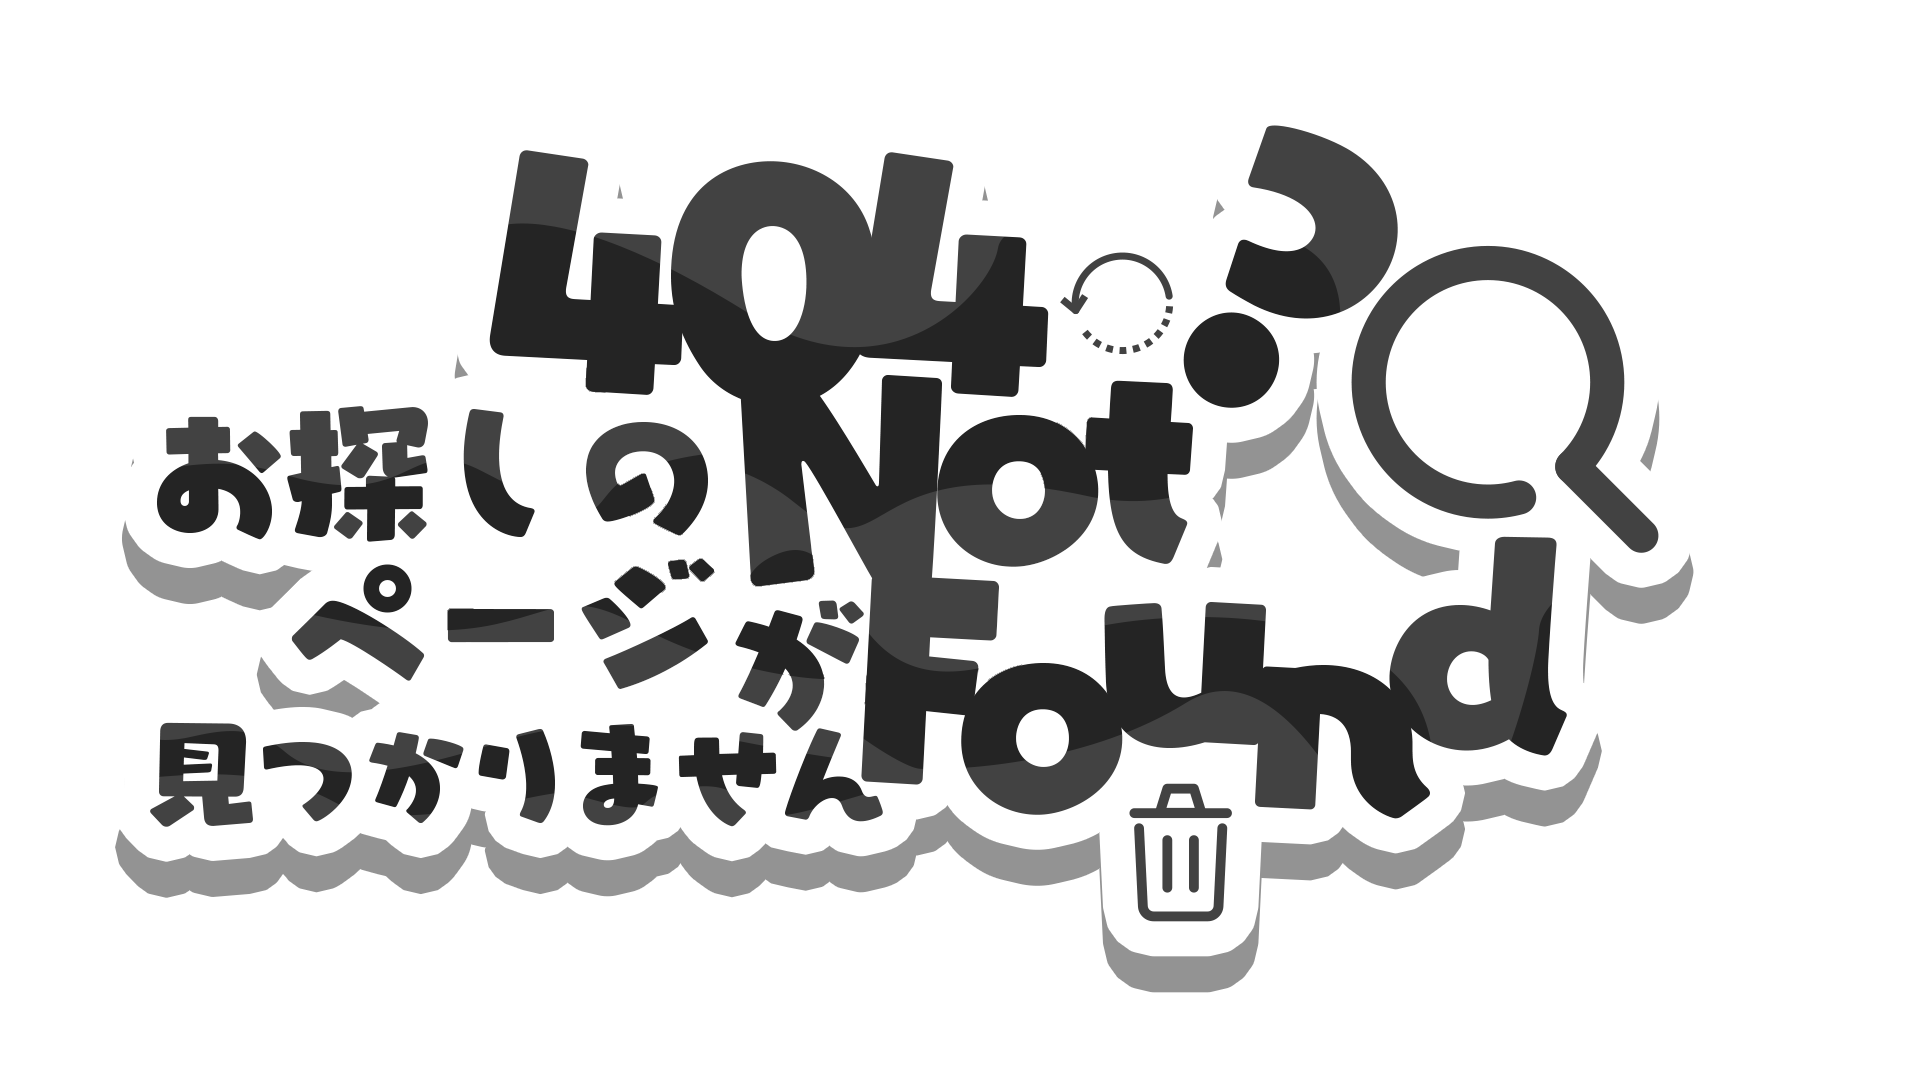 404 Logo is Made by SAWARATSUKI